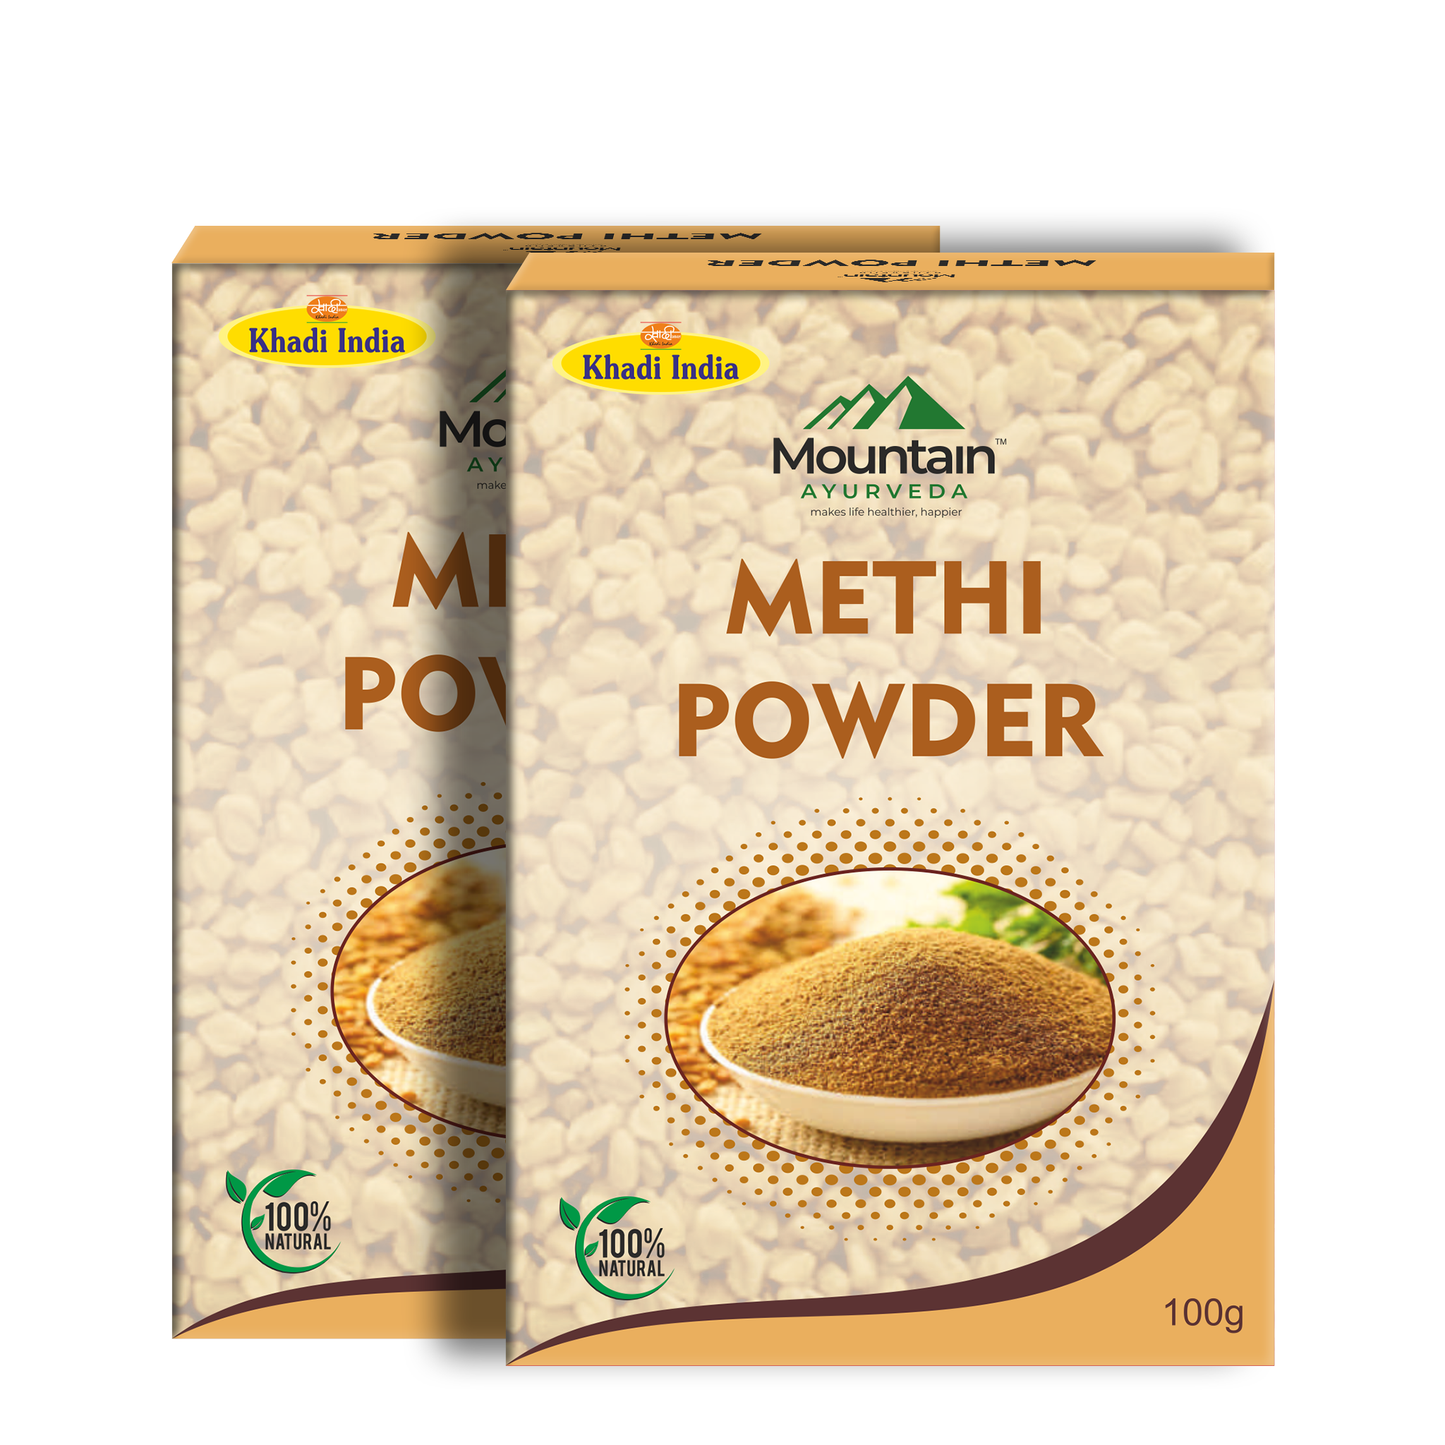 Mountain Ayurveda Methi Powder 100g (Pack of 2)